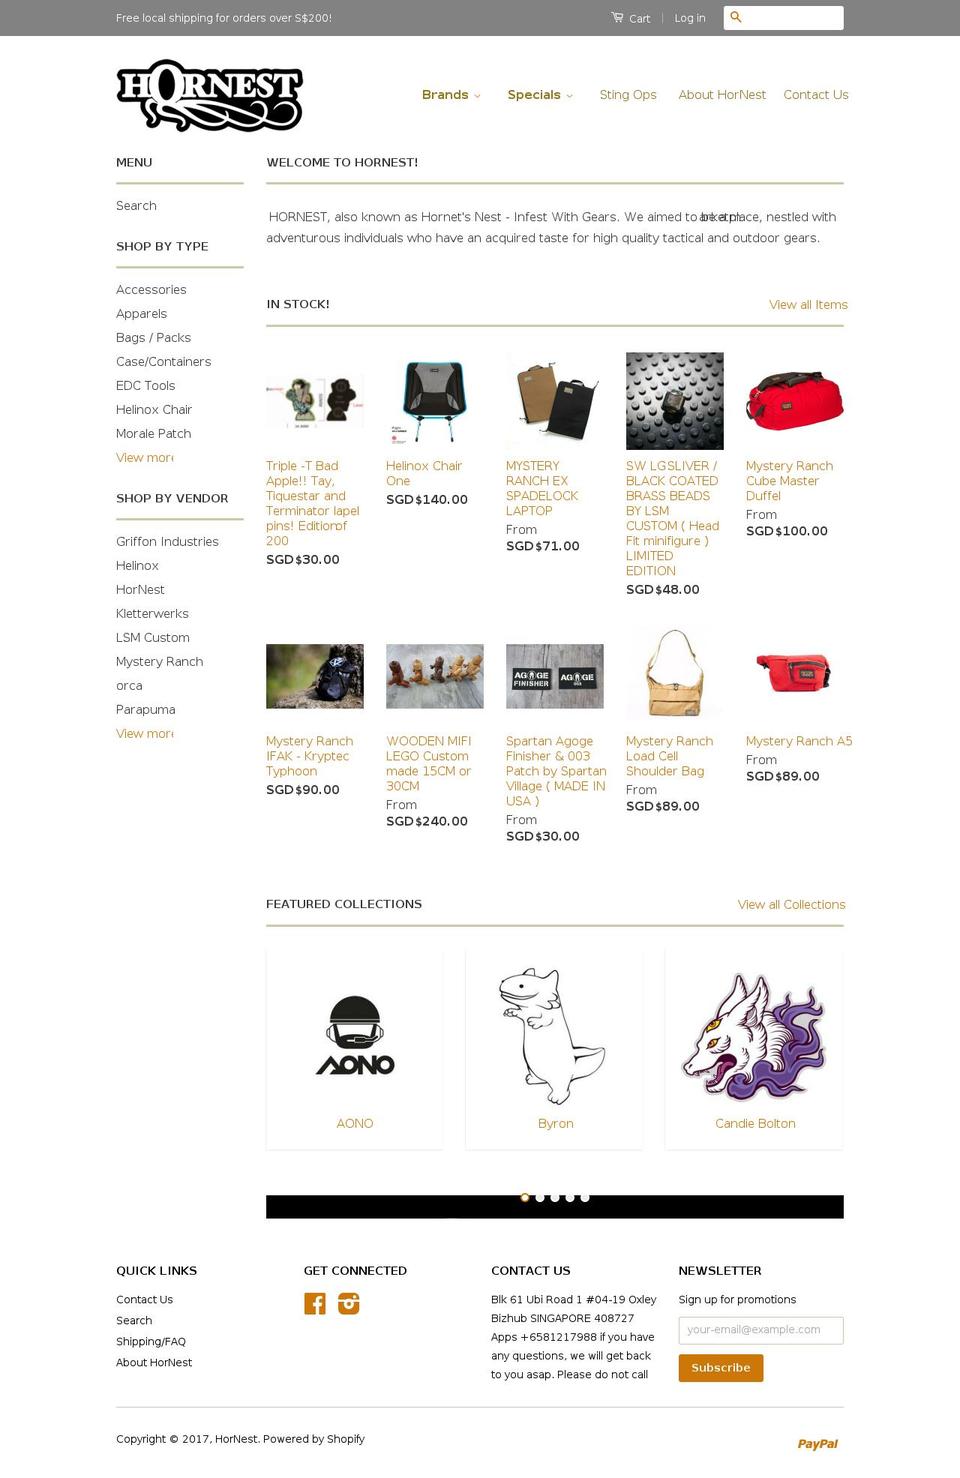 hornest.sg shopify website screenshot